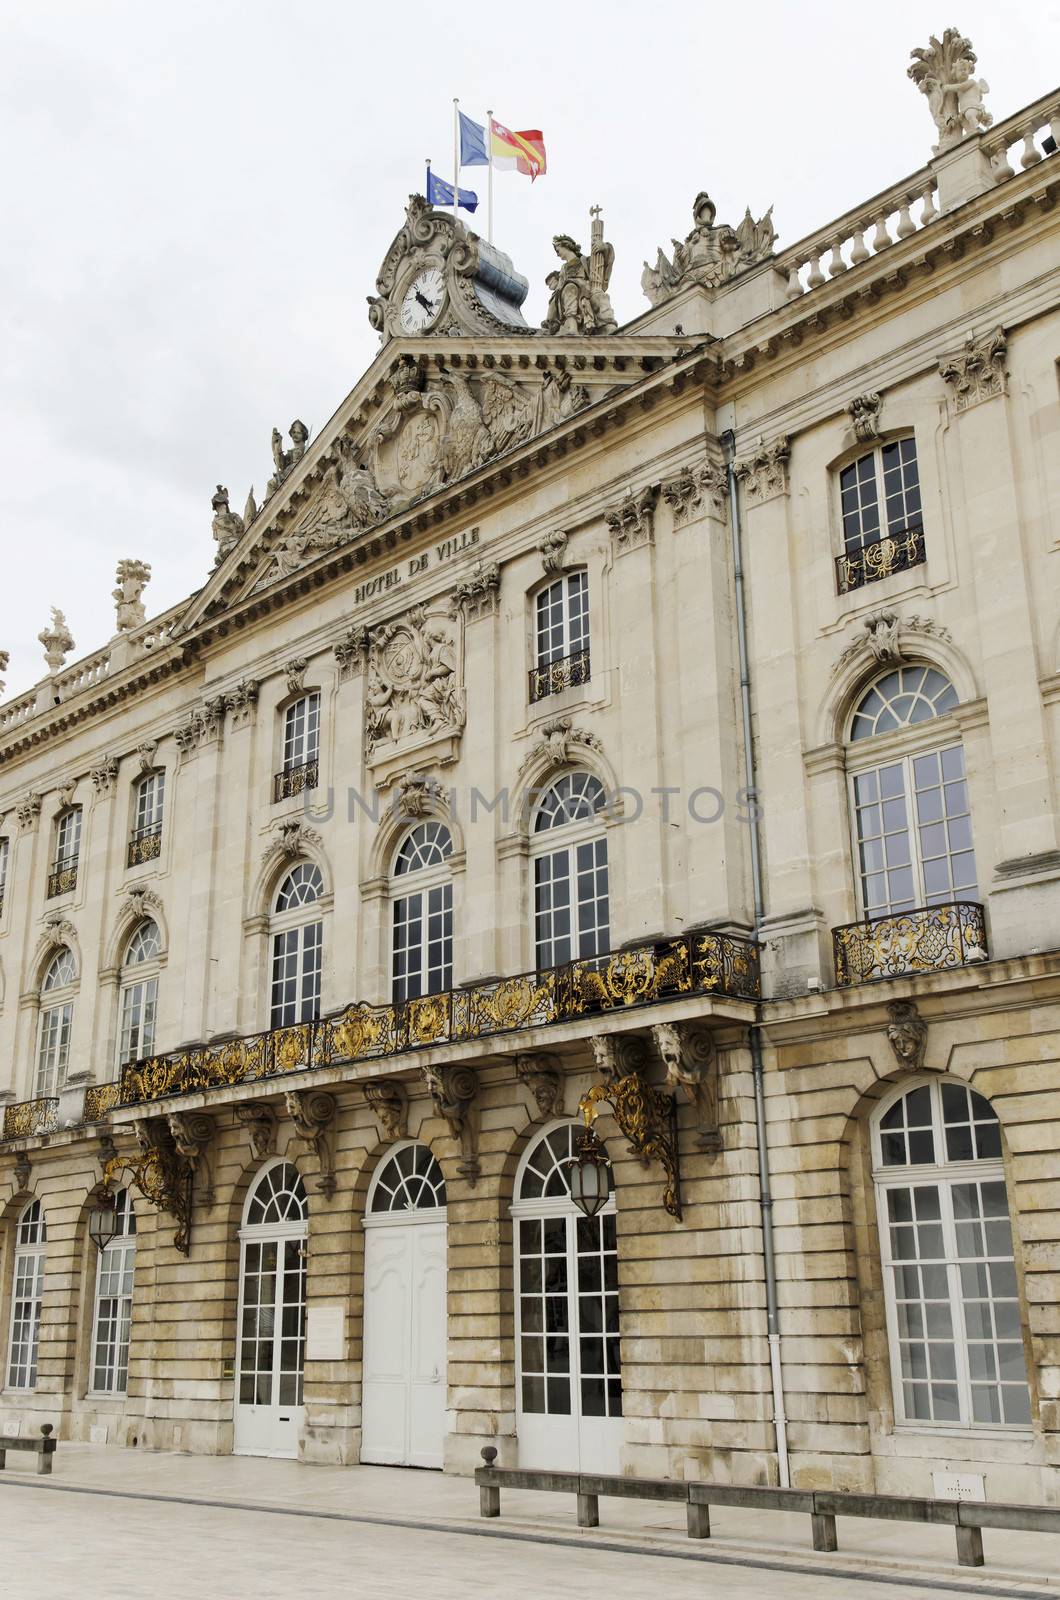 city hall of Nancy, France by Joeblack